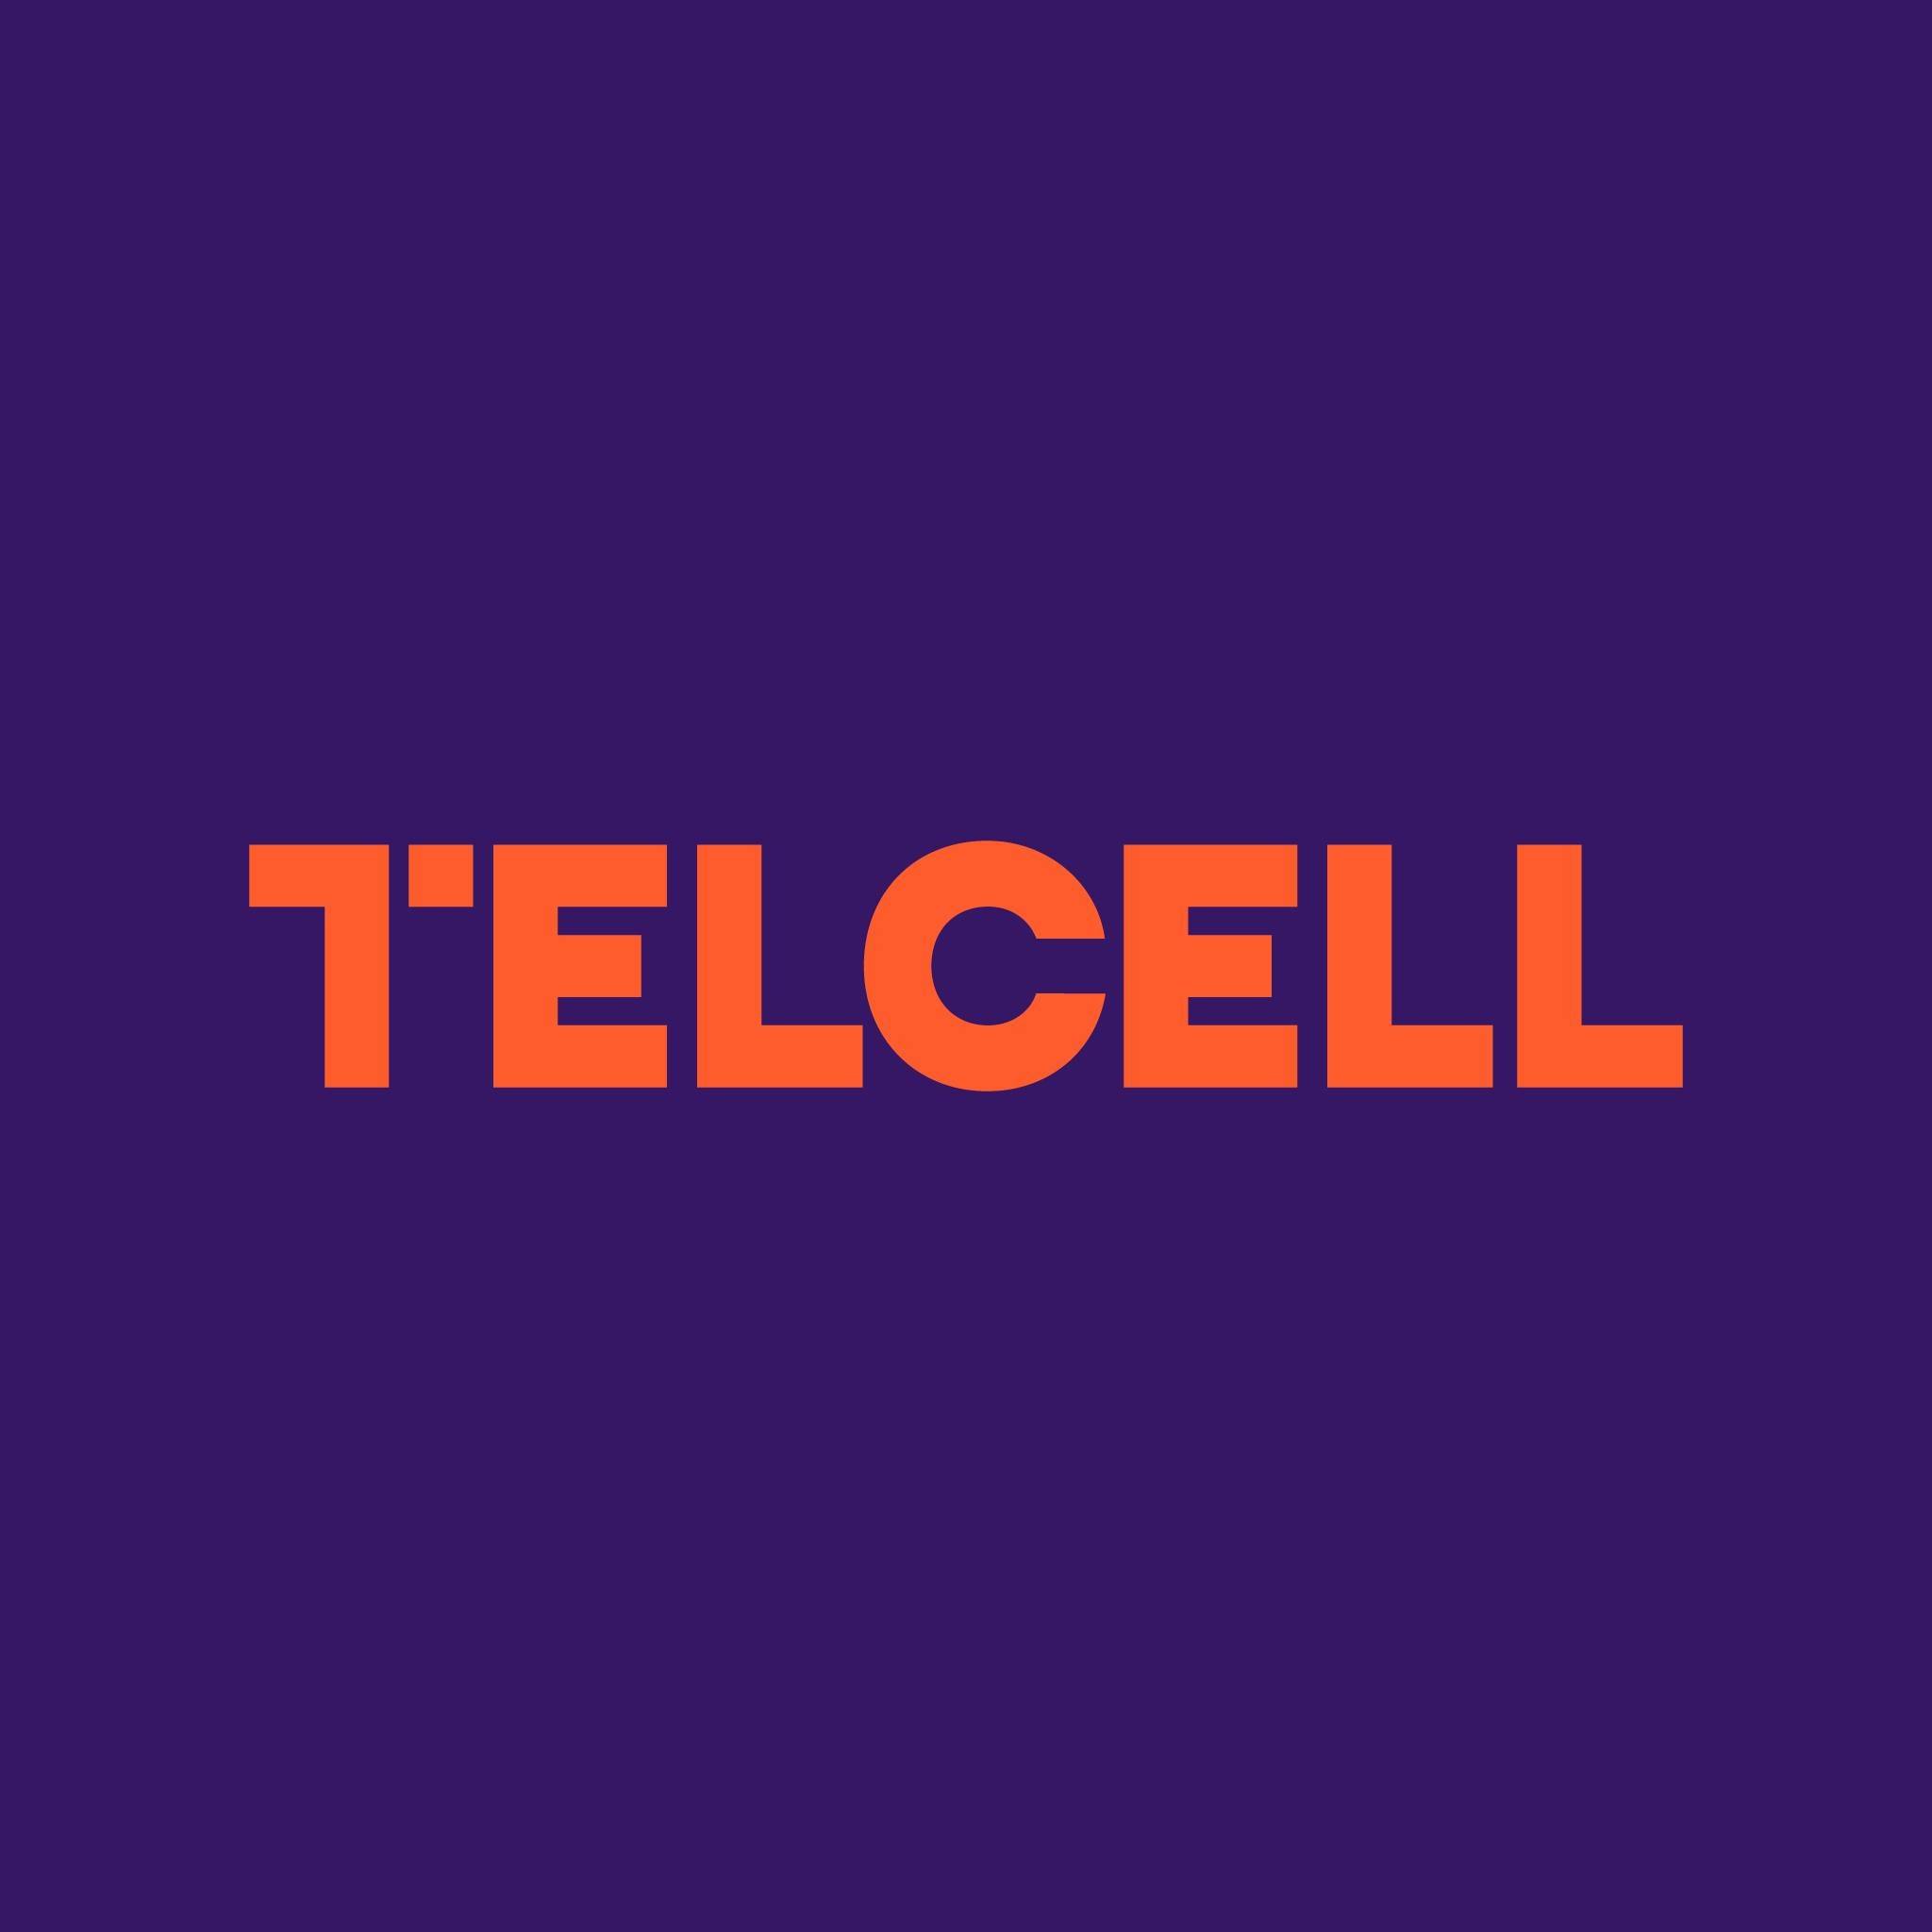 Telcell - это люди, создающие ценность